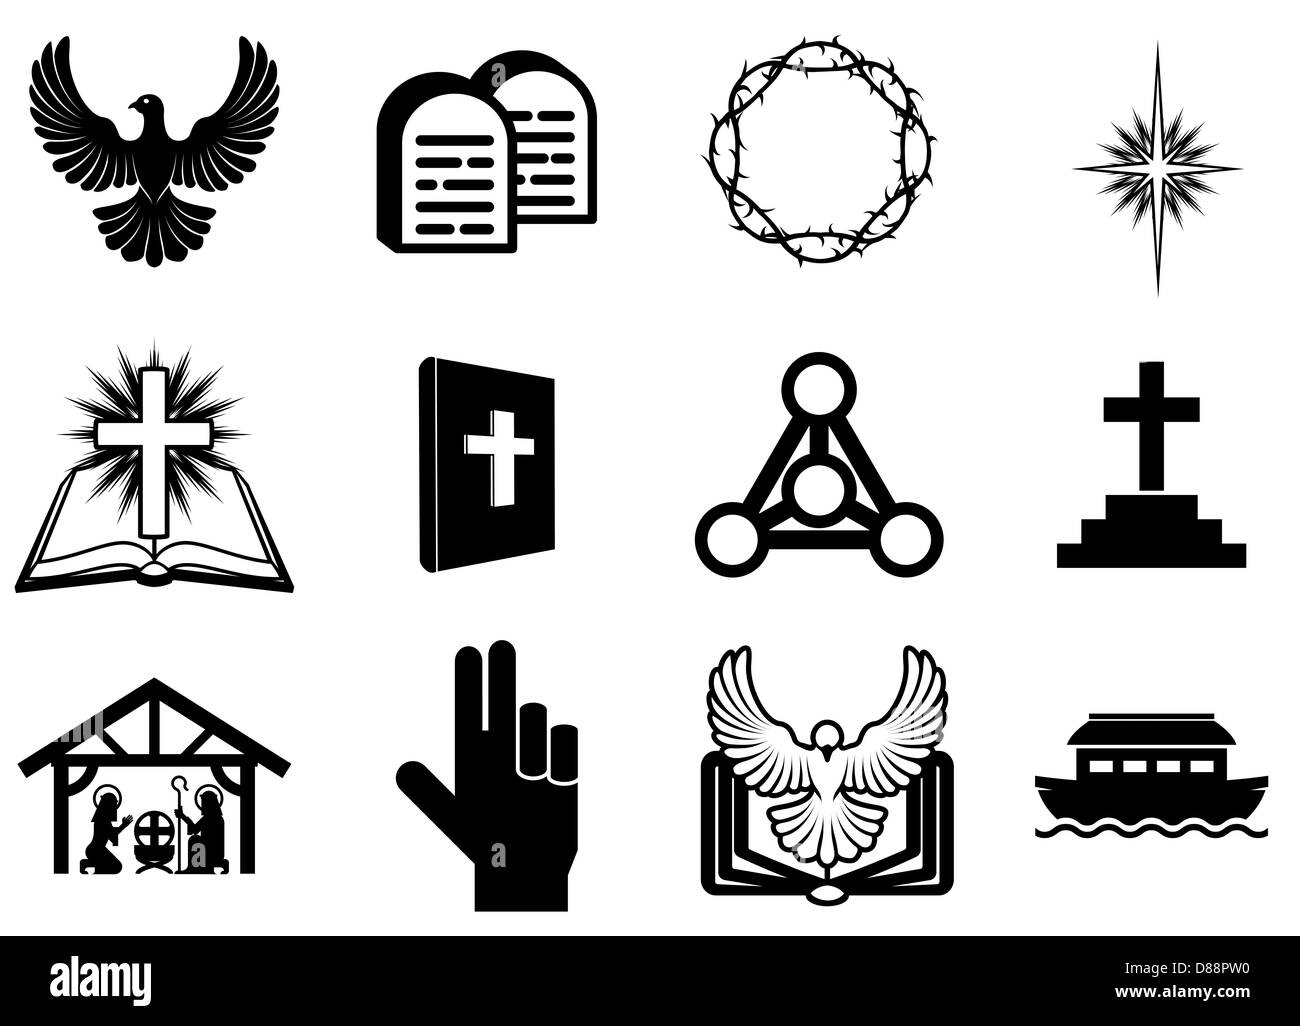 Conjunto de iconos religiosos cristianos, signos y símbolos Foto de stock